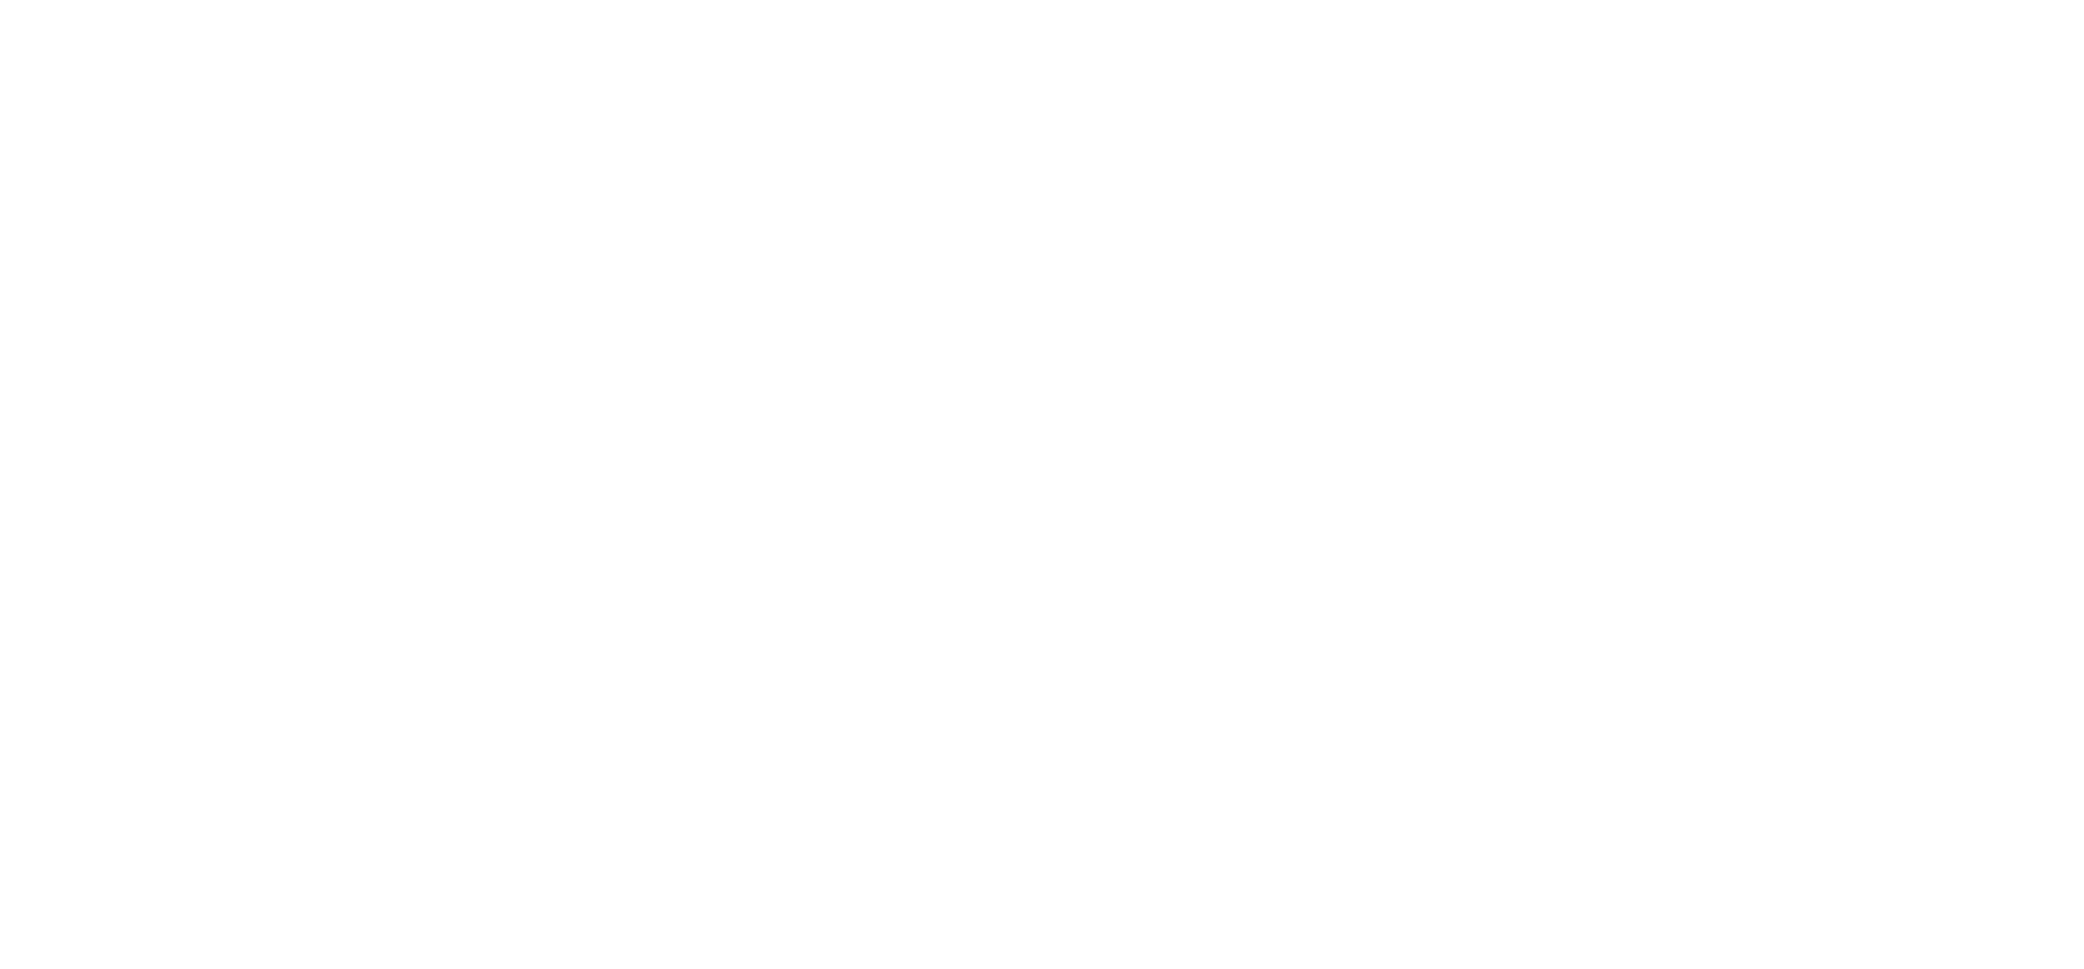 Symposium Logo